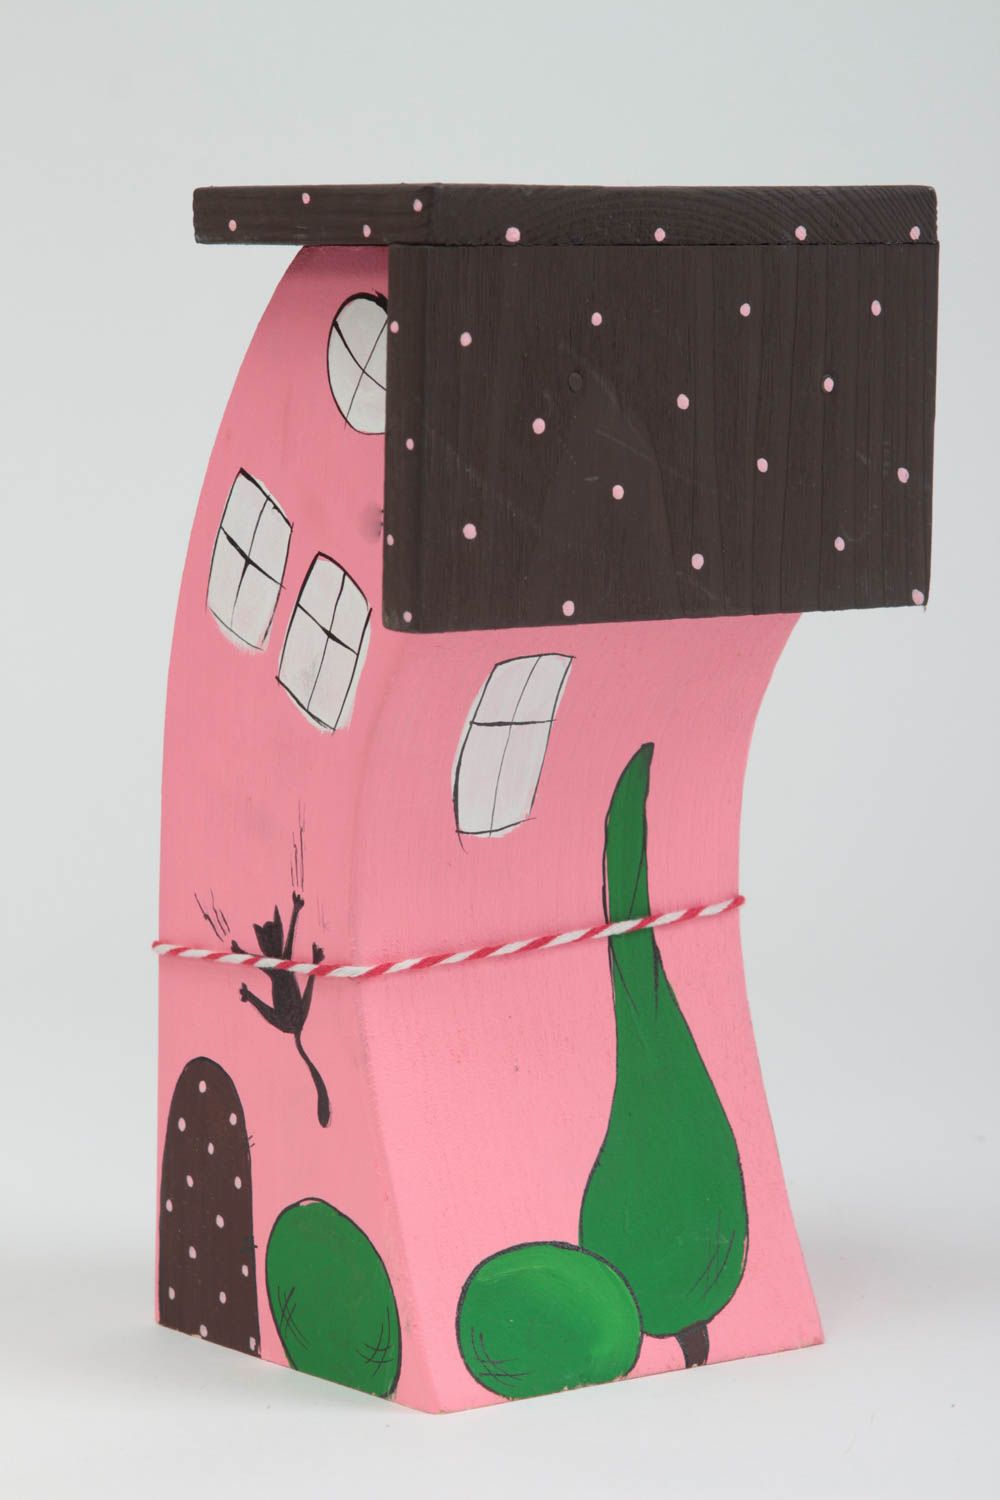 Оригинальный розовый домик для декора ручной работы расписанный красками фото 2